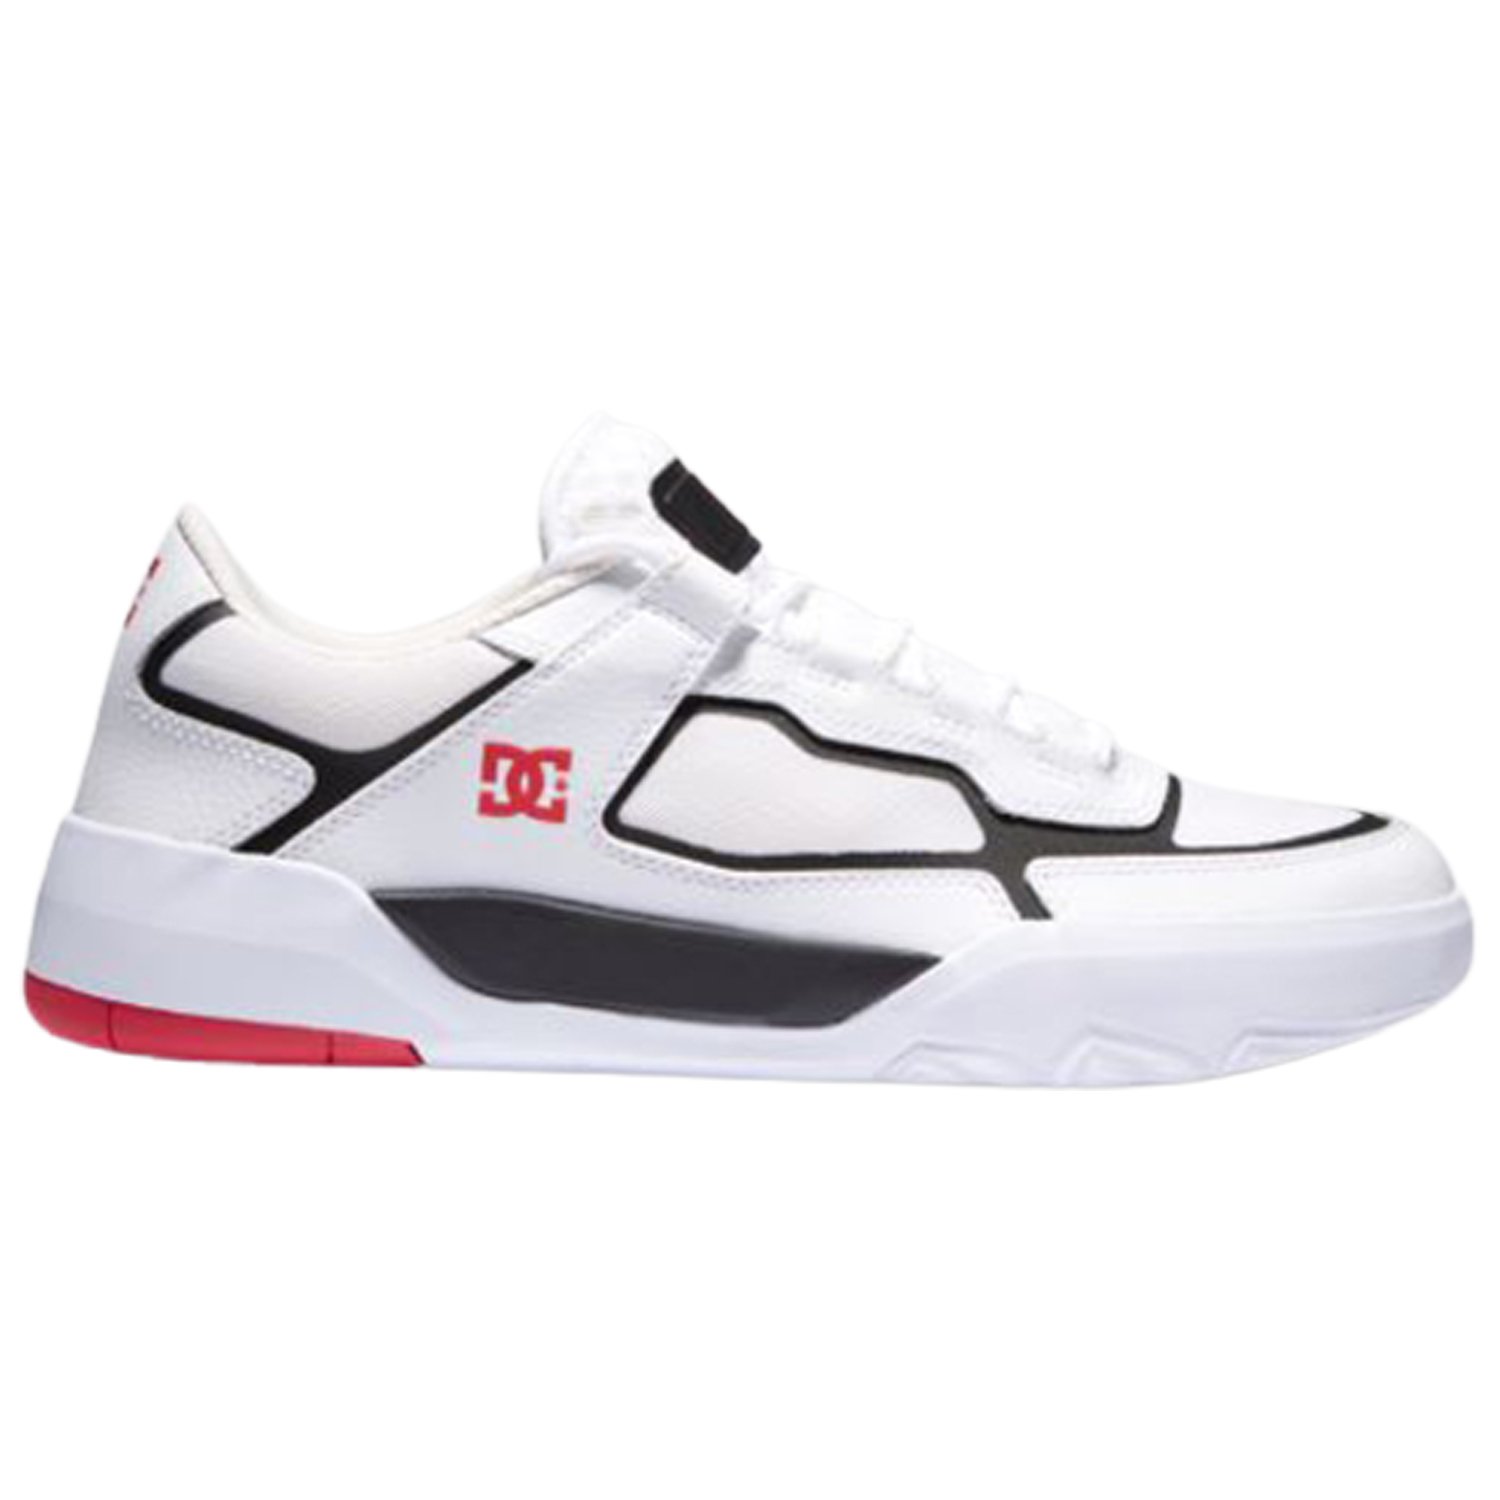 Tênis Dc Shoes Metric Masculino - Branco e Preto Branco 1